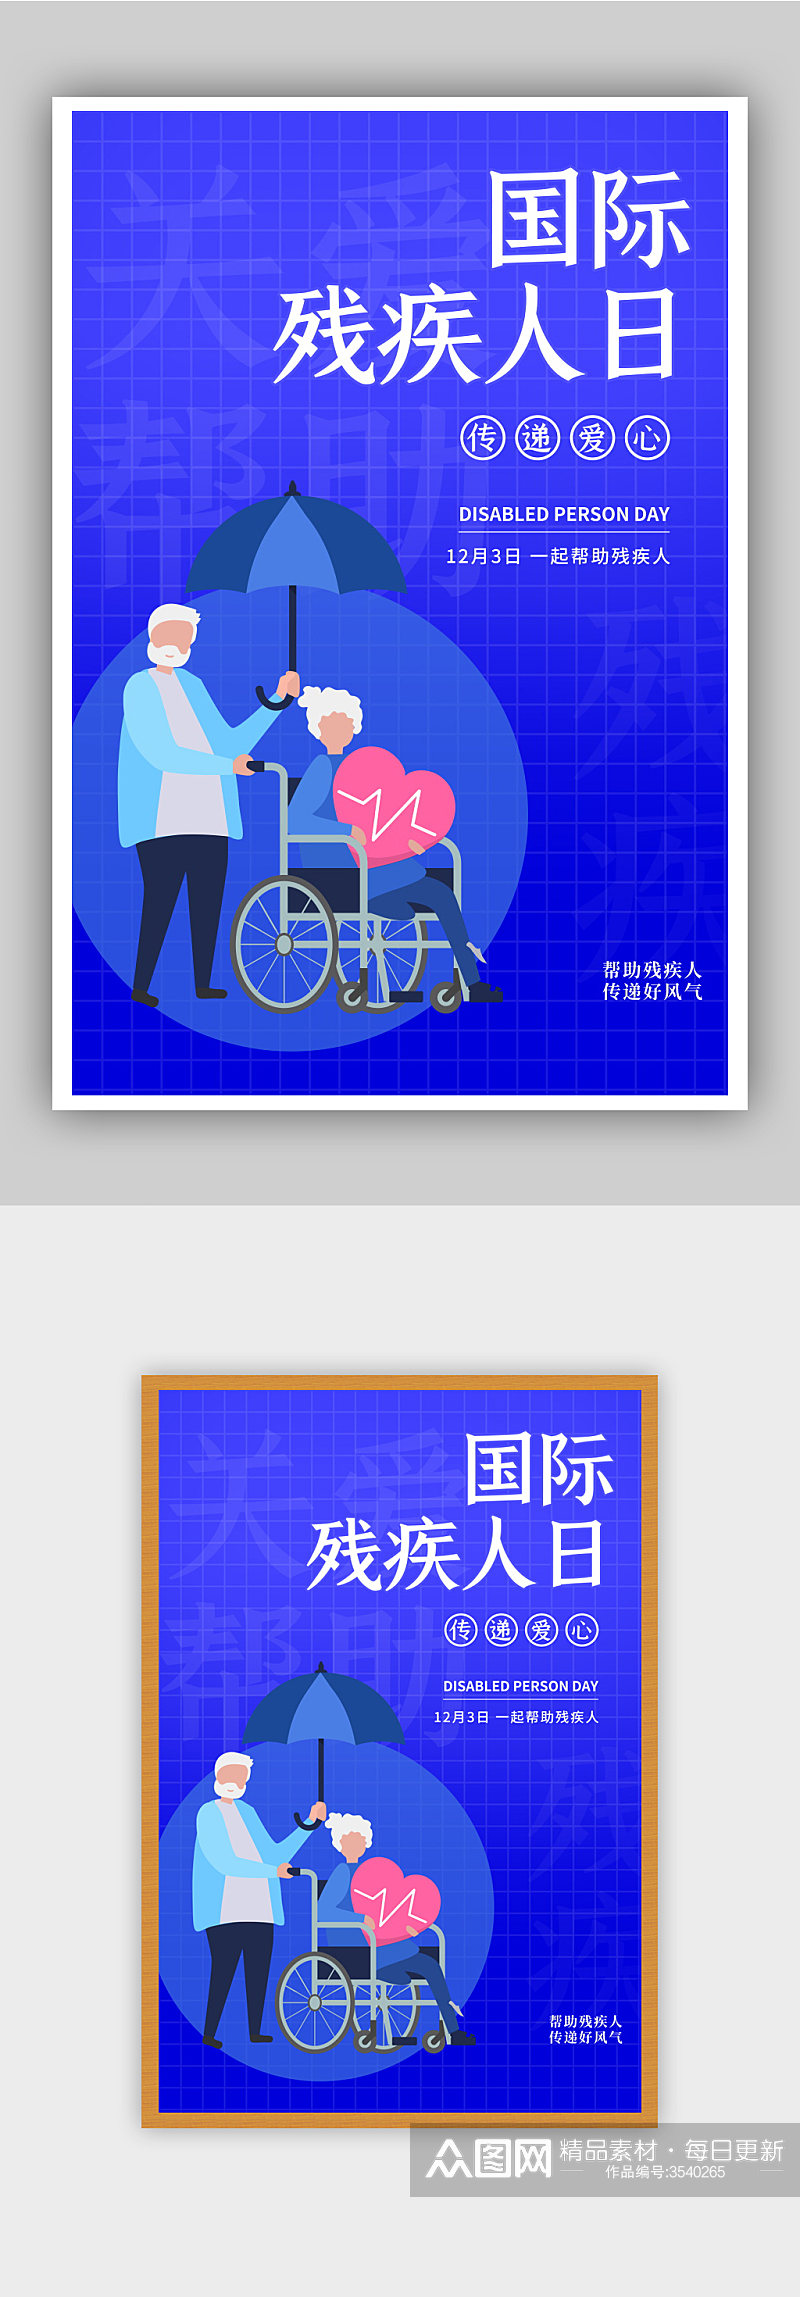 蓝色国际 世界残疾人日宣传海报素材